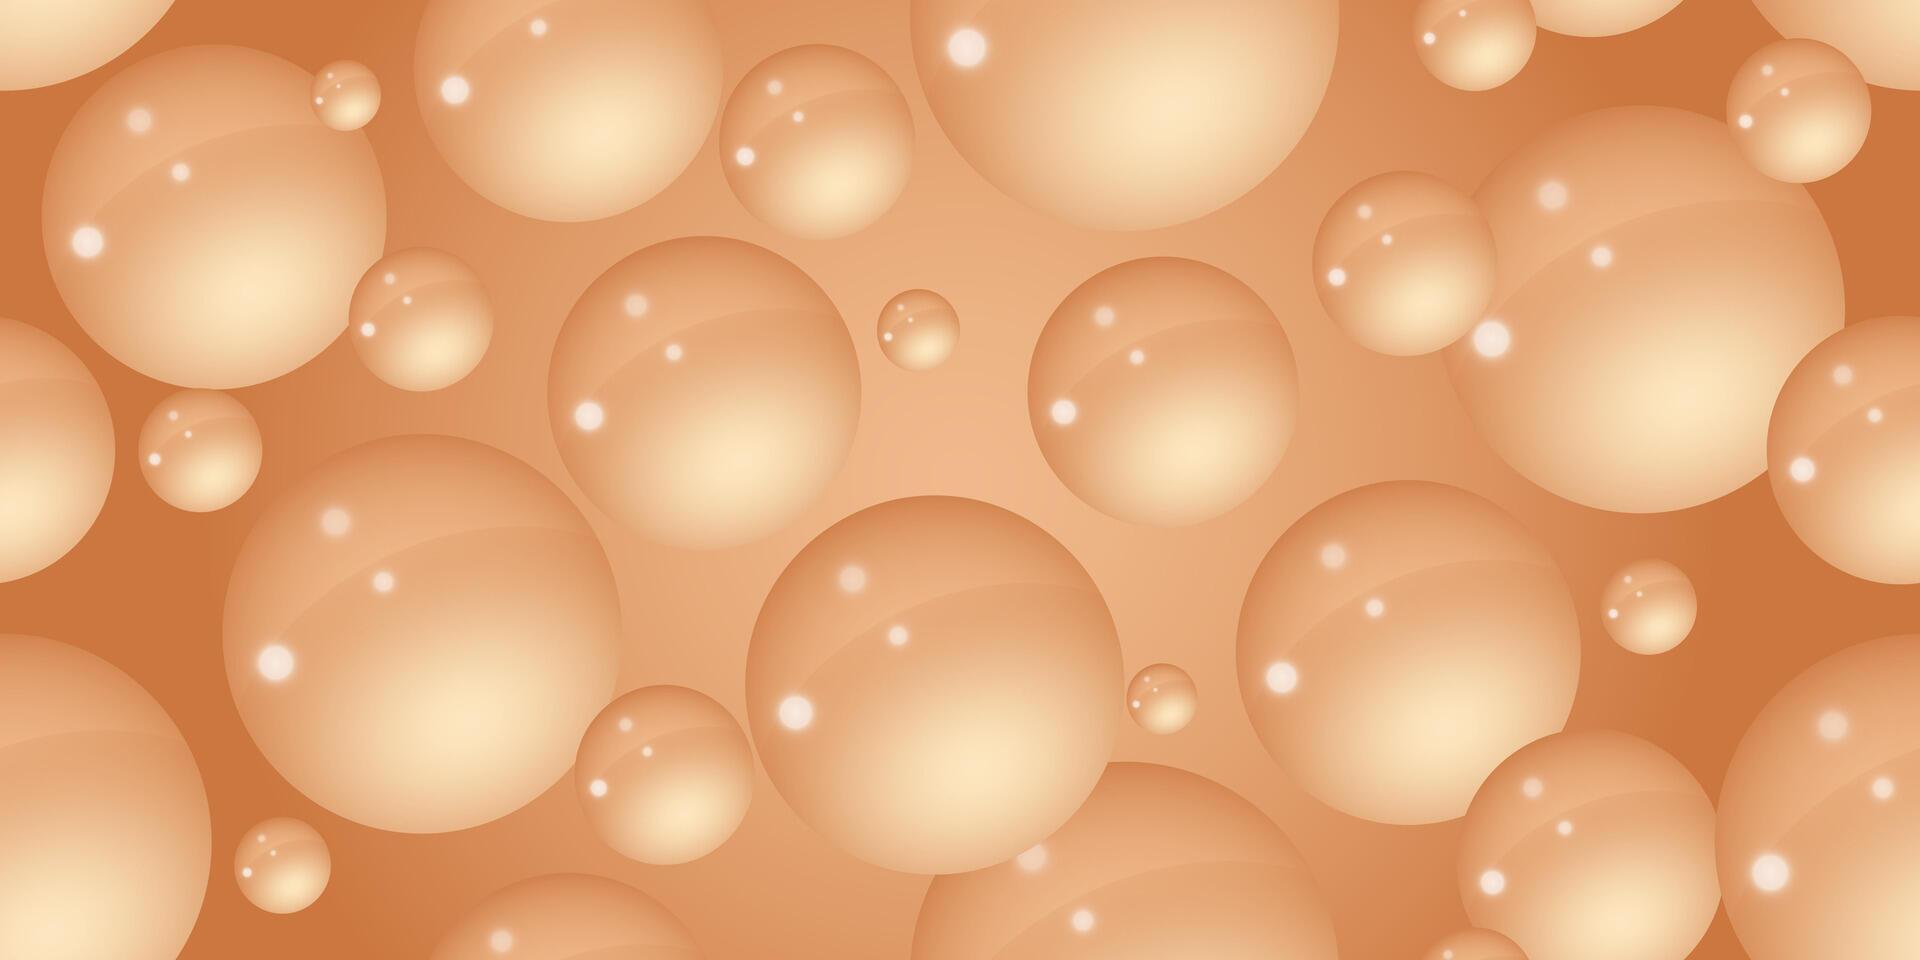 een cacao room of koffie met melk achtergrond met veel bubbels. abstract bubbel achtergrond. 3d structuur van vloeistof met klodders. naadloos patroon. vector illustratie.